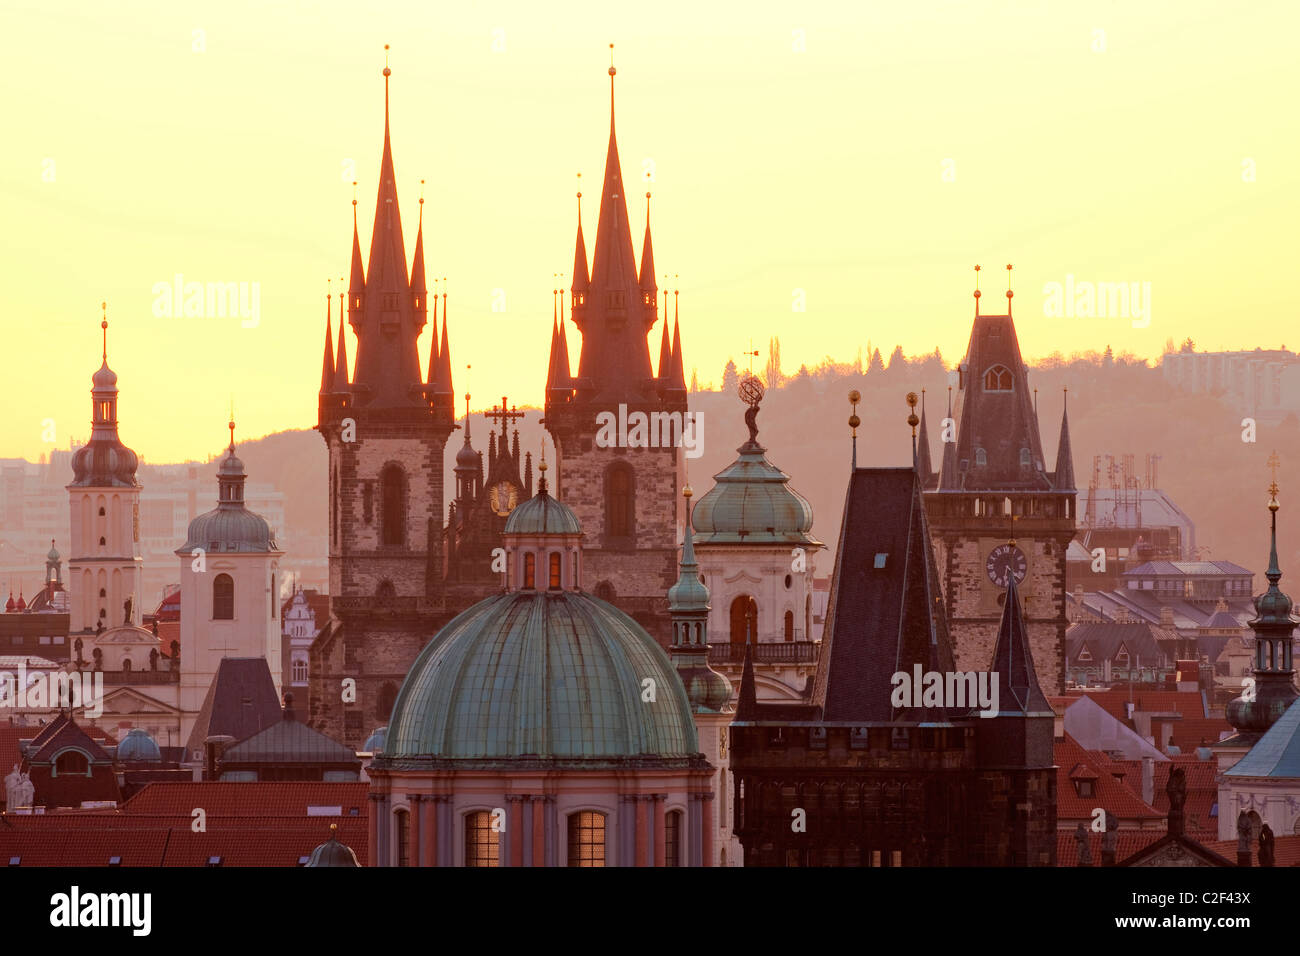 Praga, República Checa - Torres de la ciudad vieja y la iglesia de Tyn Foto de stock